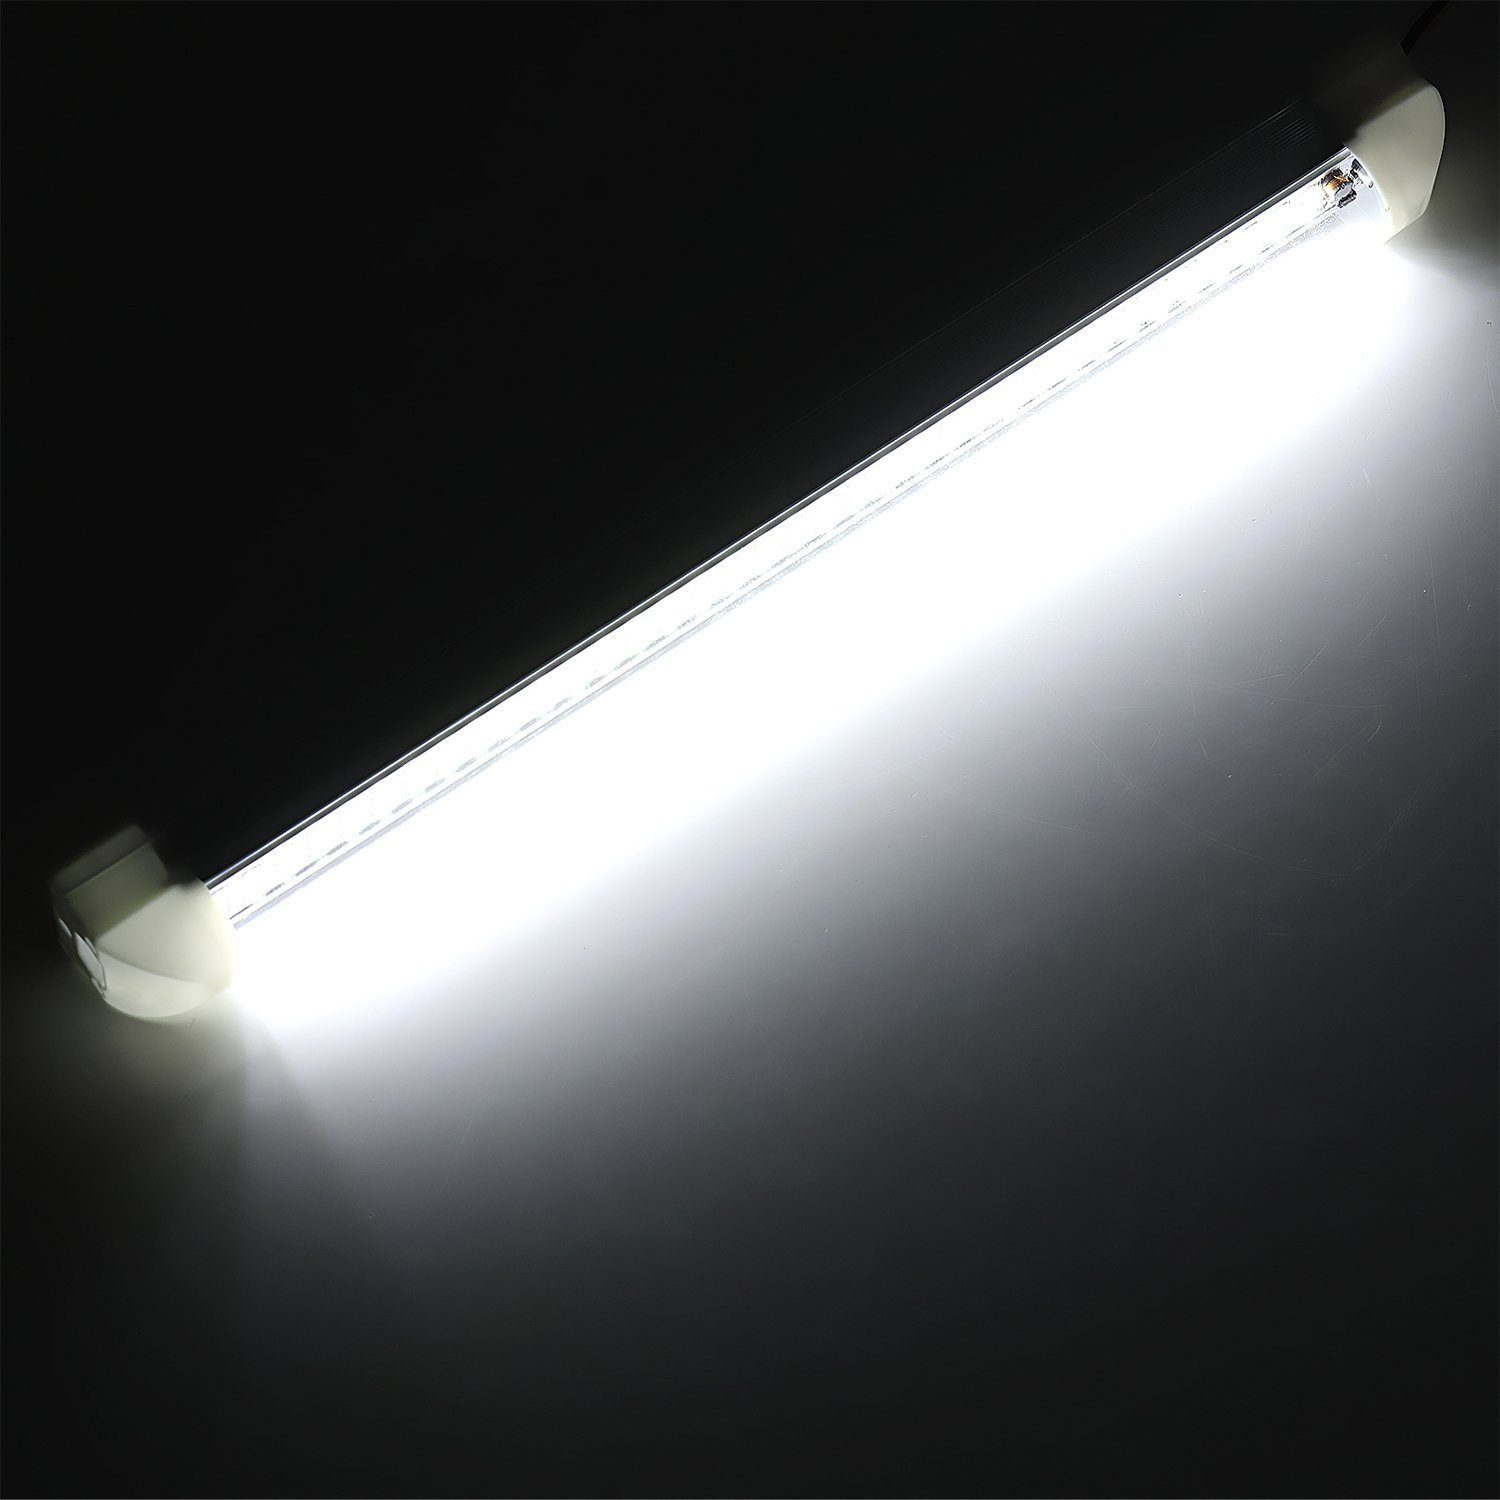 Schalter Van LEDs Leuchtet LED-Streifen mit 108 LED 2x Innenlichtleiste 12V Wohnmobile Auto EIN/ AUS Leiste, LKW für Innenbeleuchtung oyajia